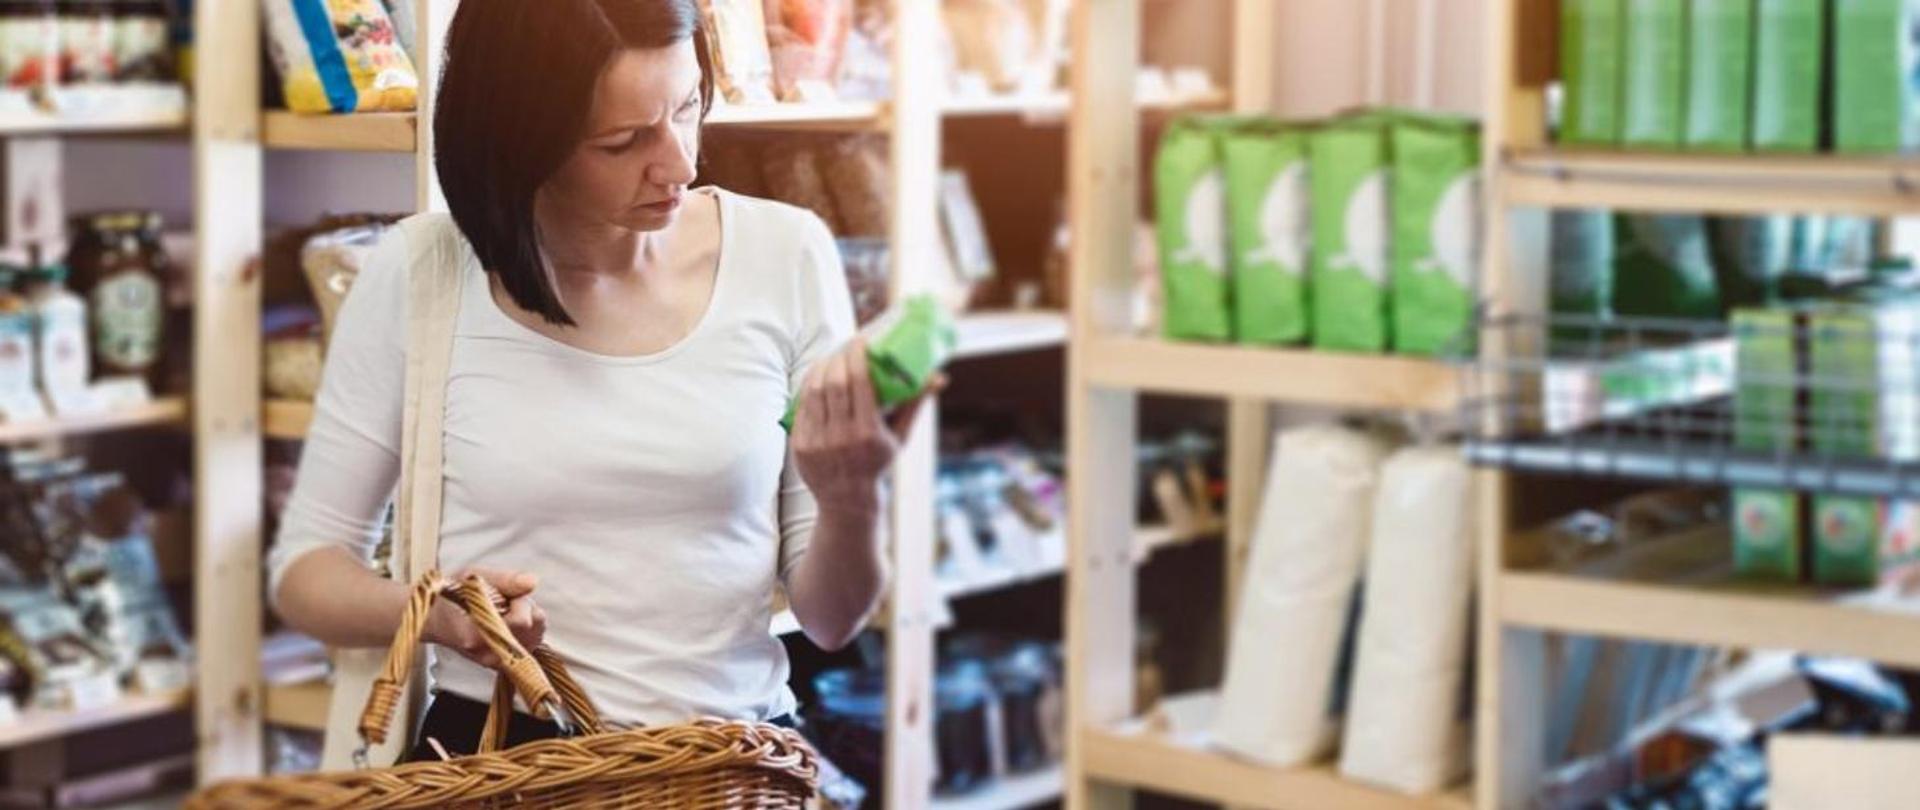 zdjęcie kobiety w sklepie która trzyma koszyk i czyta etykietę produktu